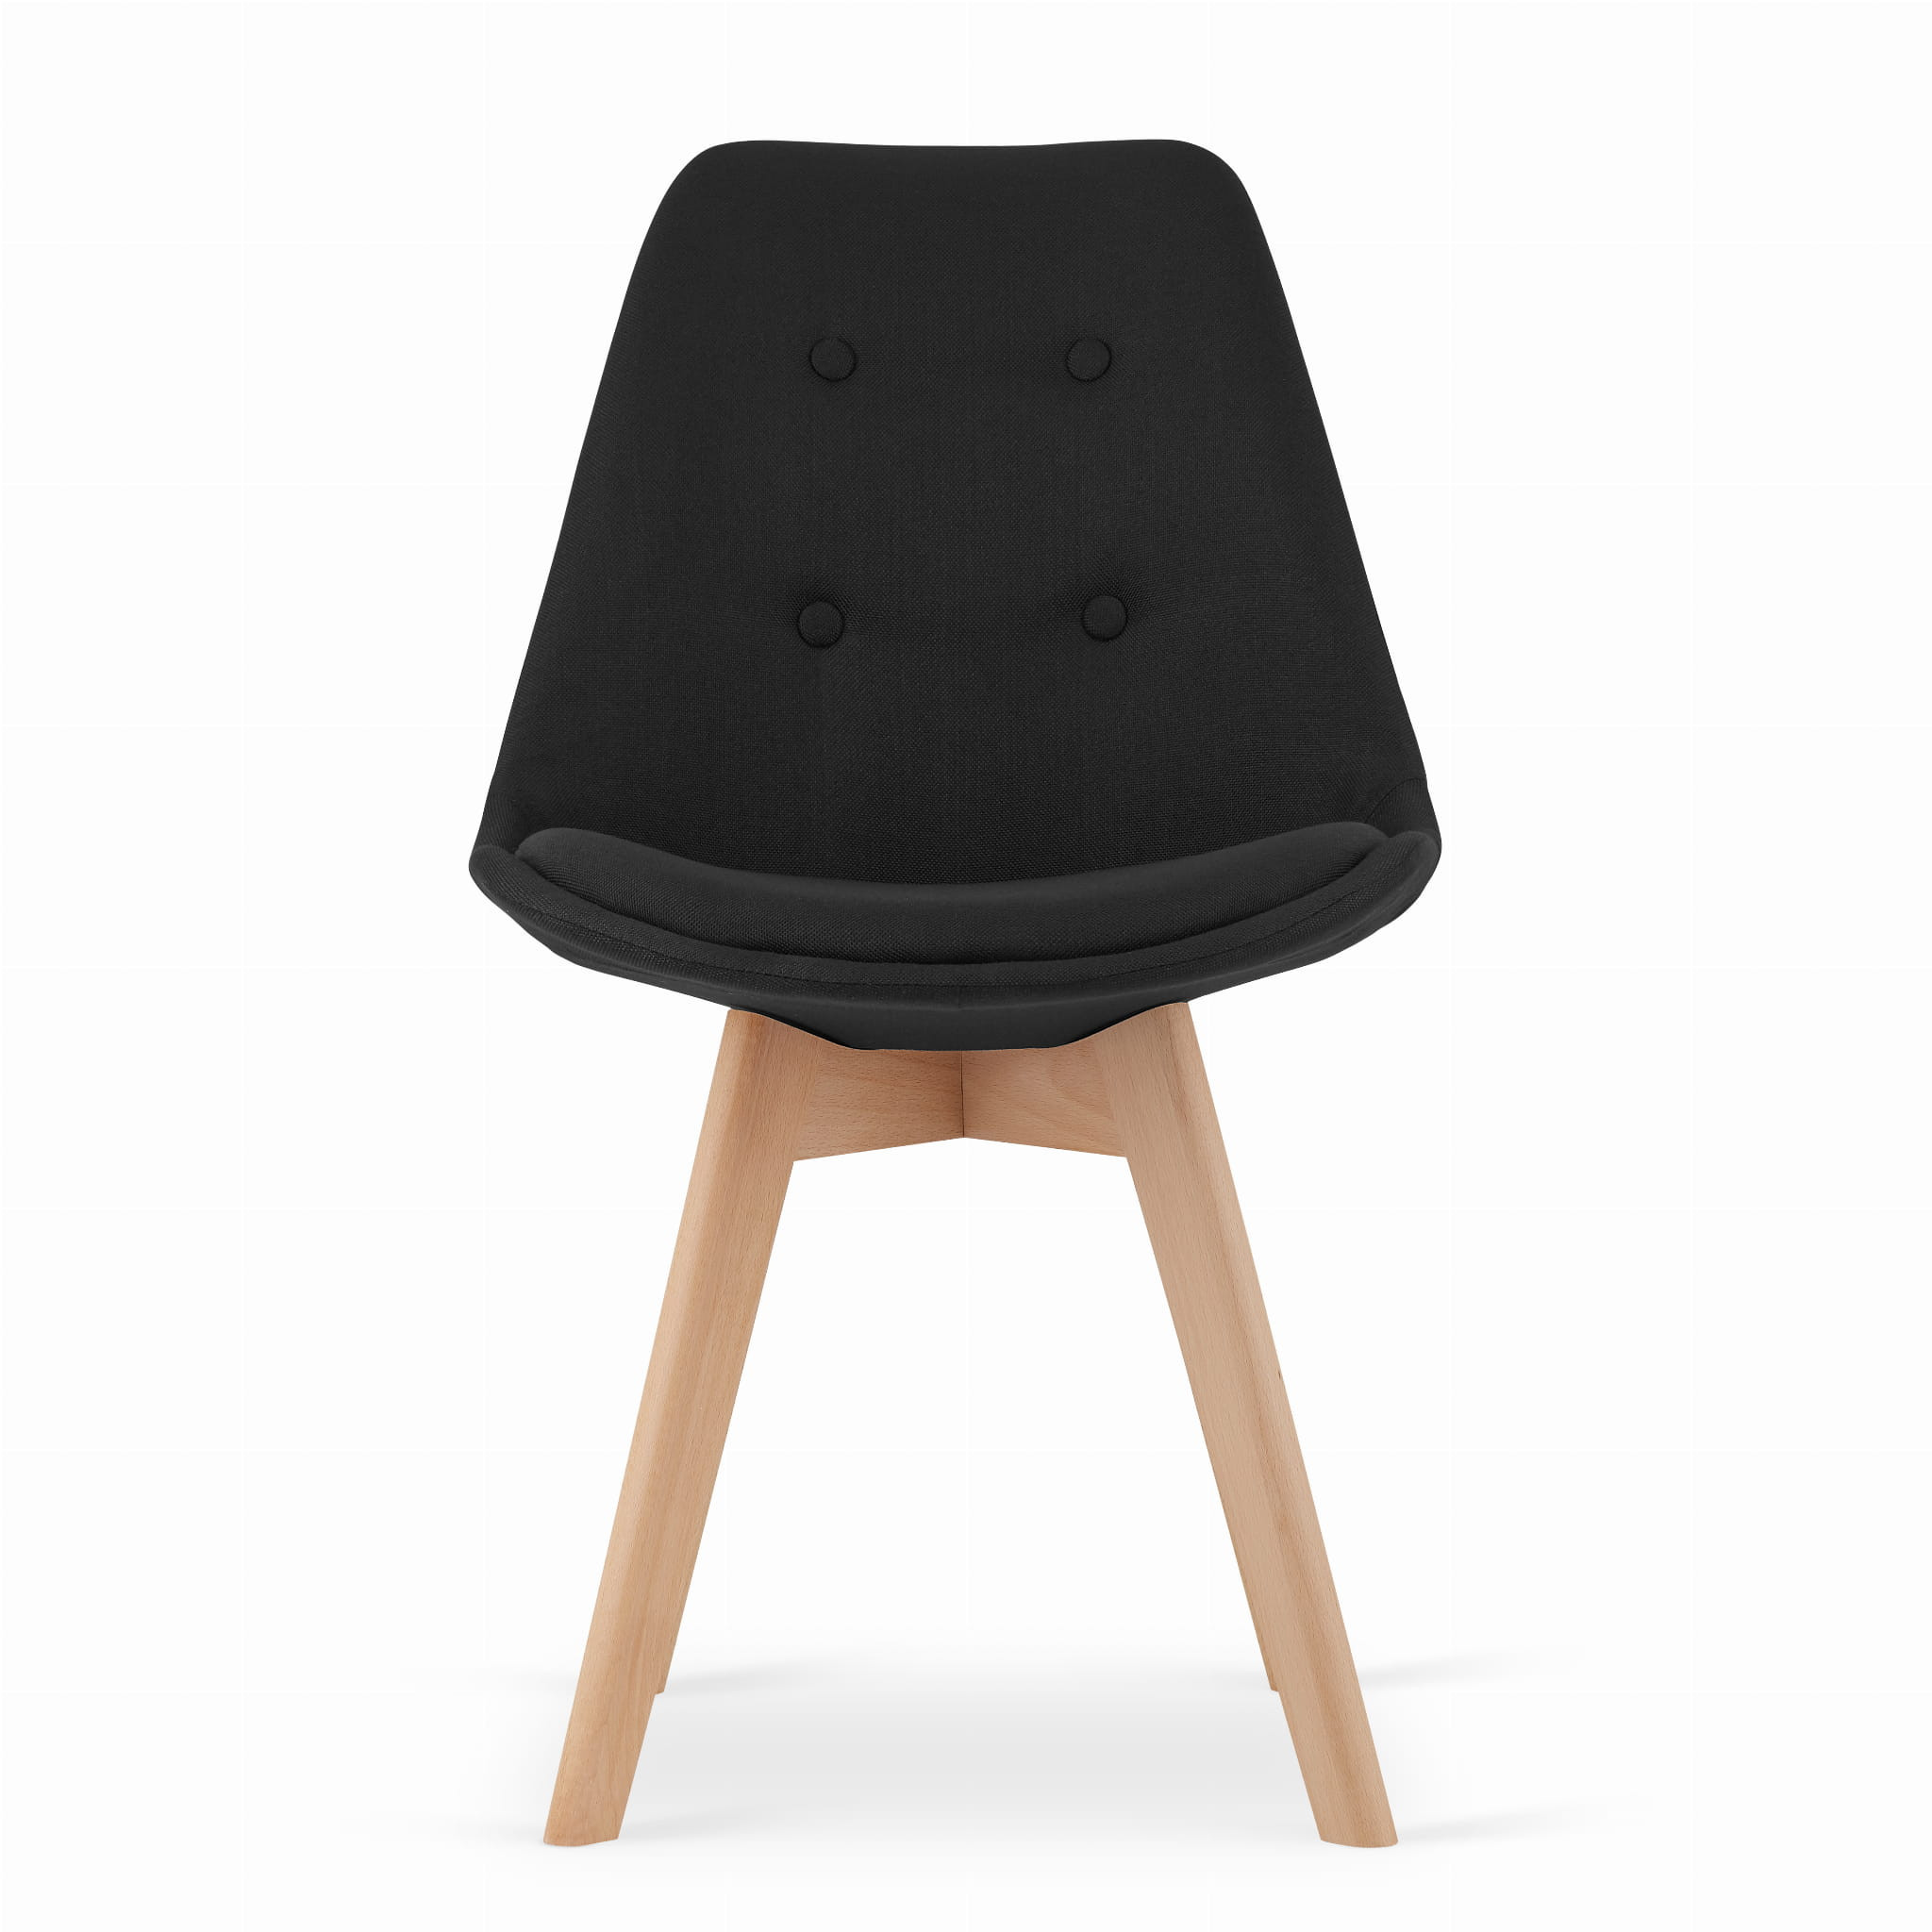 Set tří jídelních židlí NORI černé s knoflíky (hnědé nohy) (3ks)